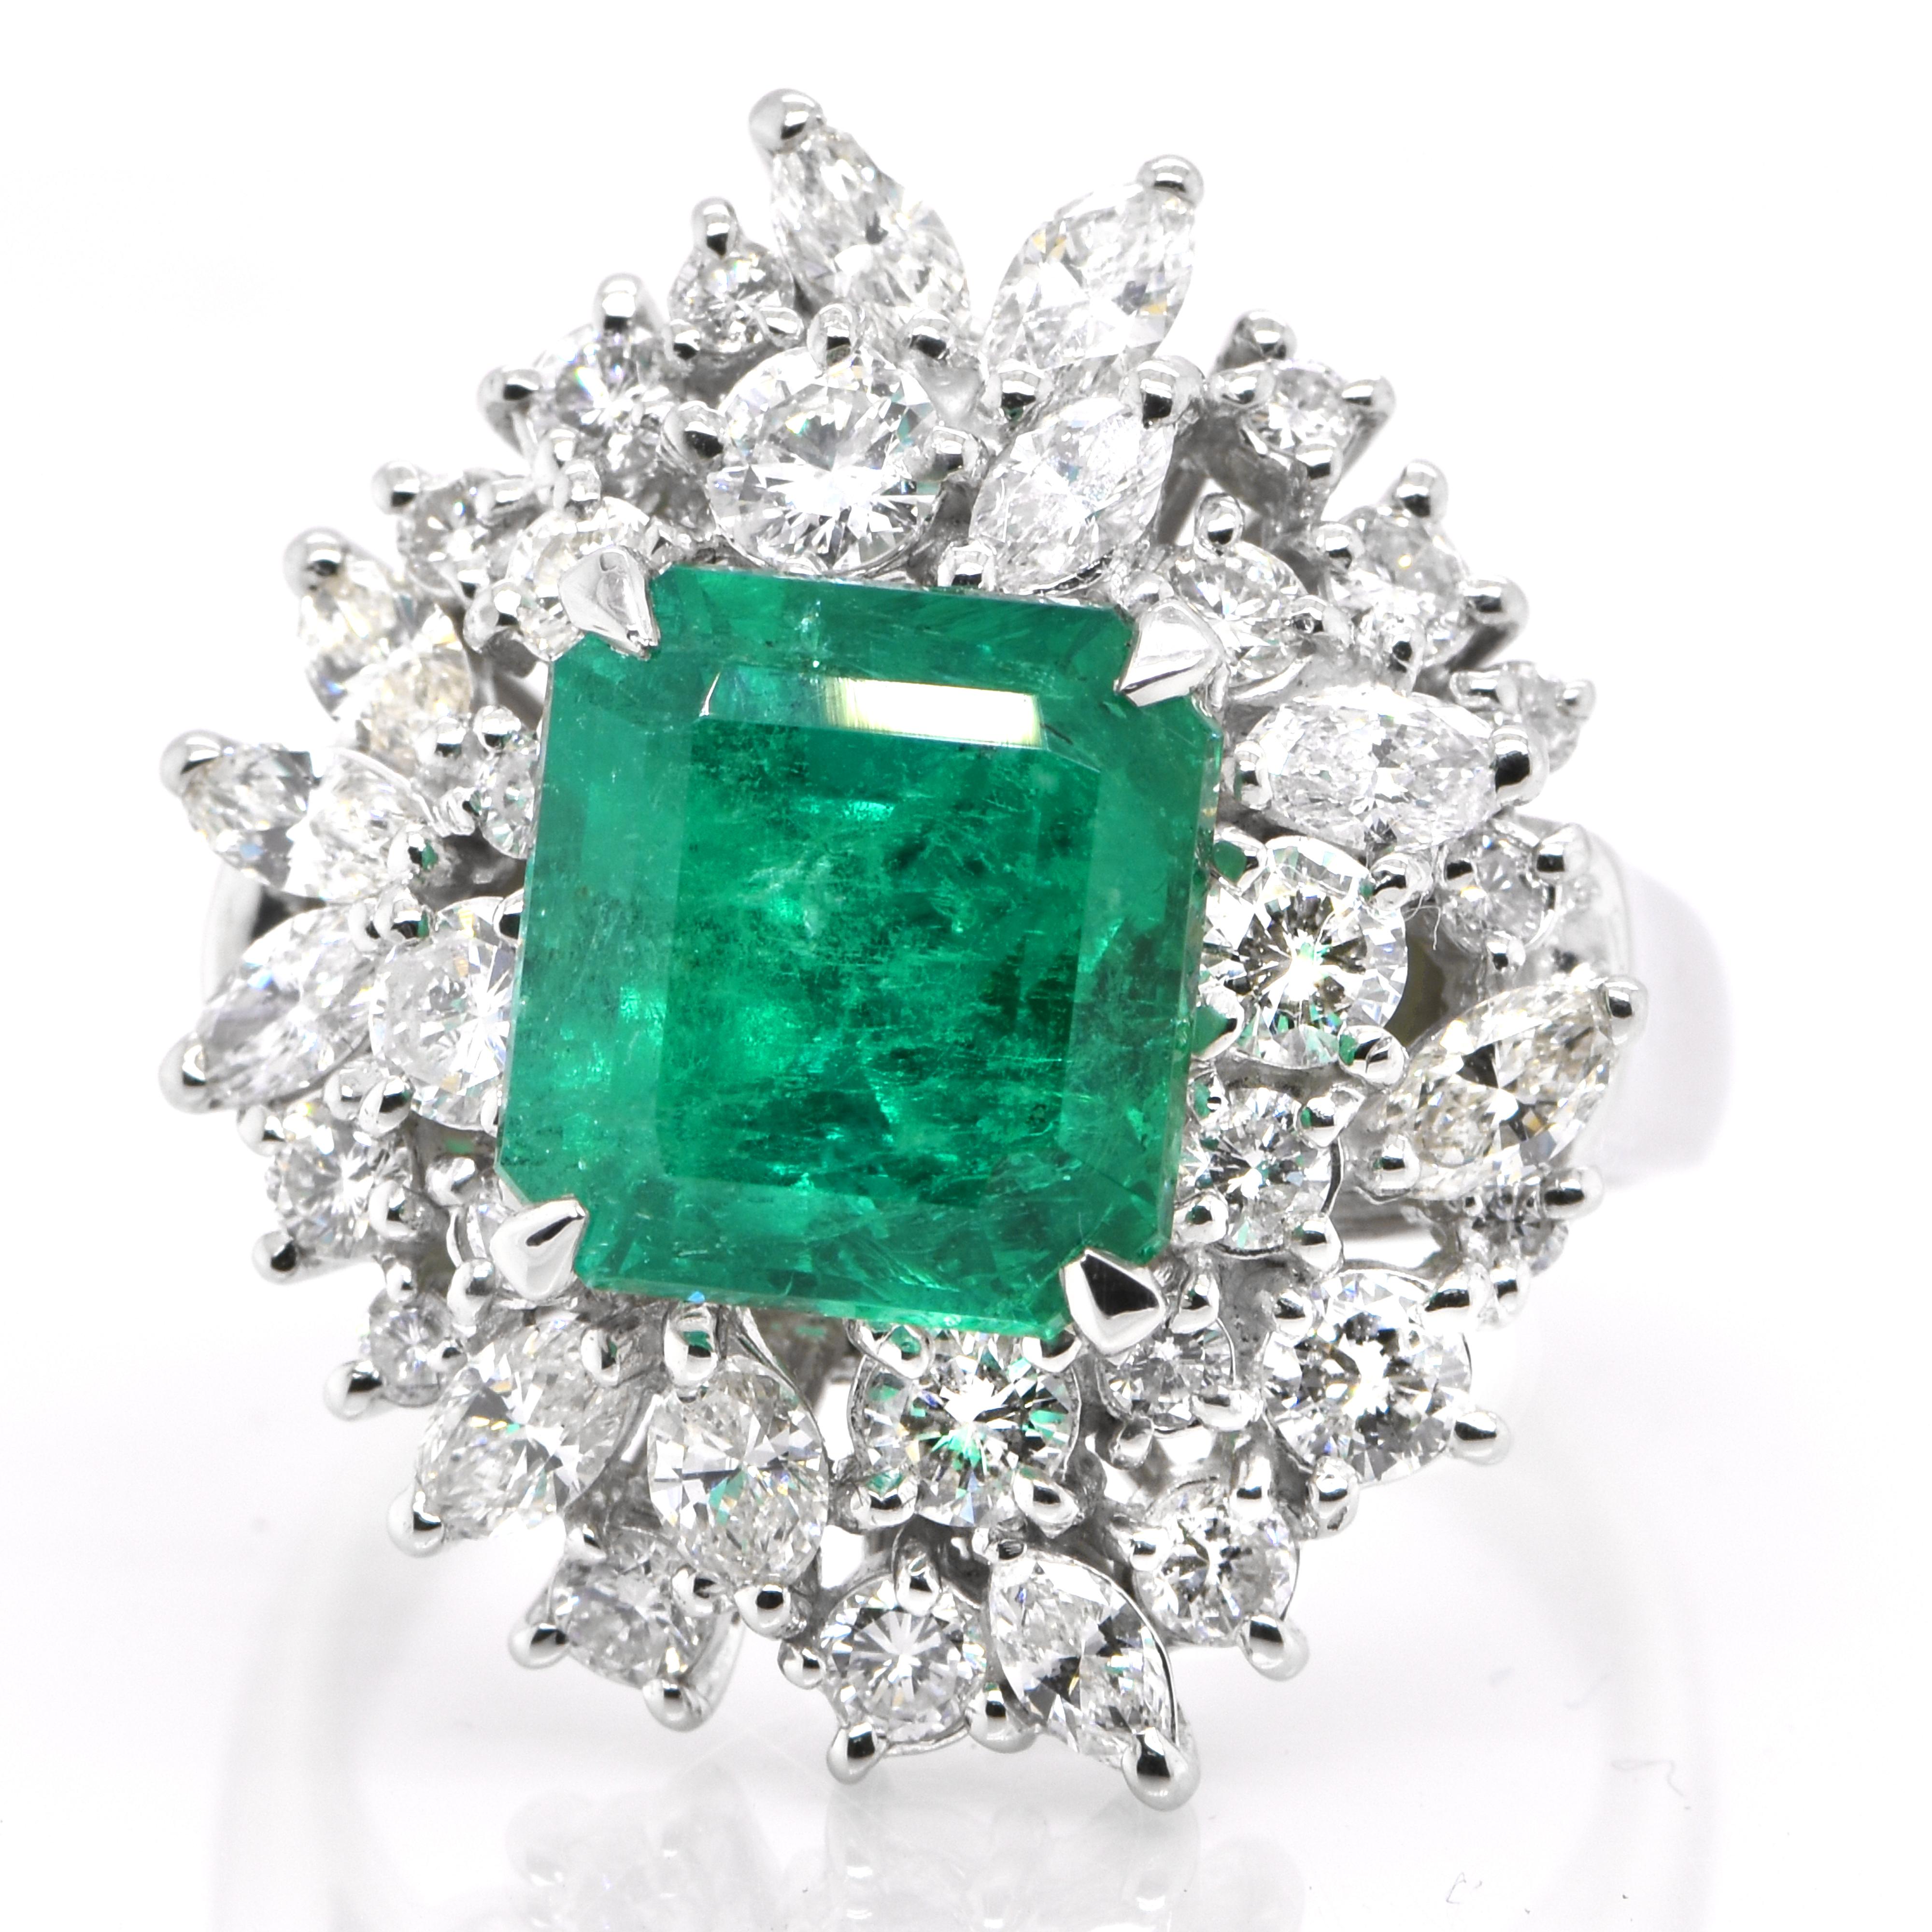 Ein atemberaubender Ring mit einem natürlichen kolumbianischen Smaragd von 4,61 Karat und 2,10 Karat Diamanten in Platin gefasst. Seit Tausenden von Jahren bewundern die Menschen das Grün des Smaragds. Smaragde werden seit jeher mit den üppigsten